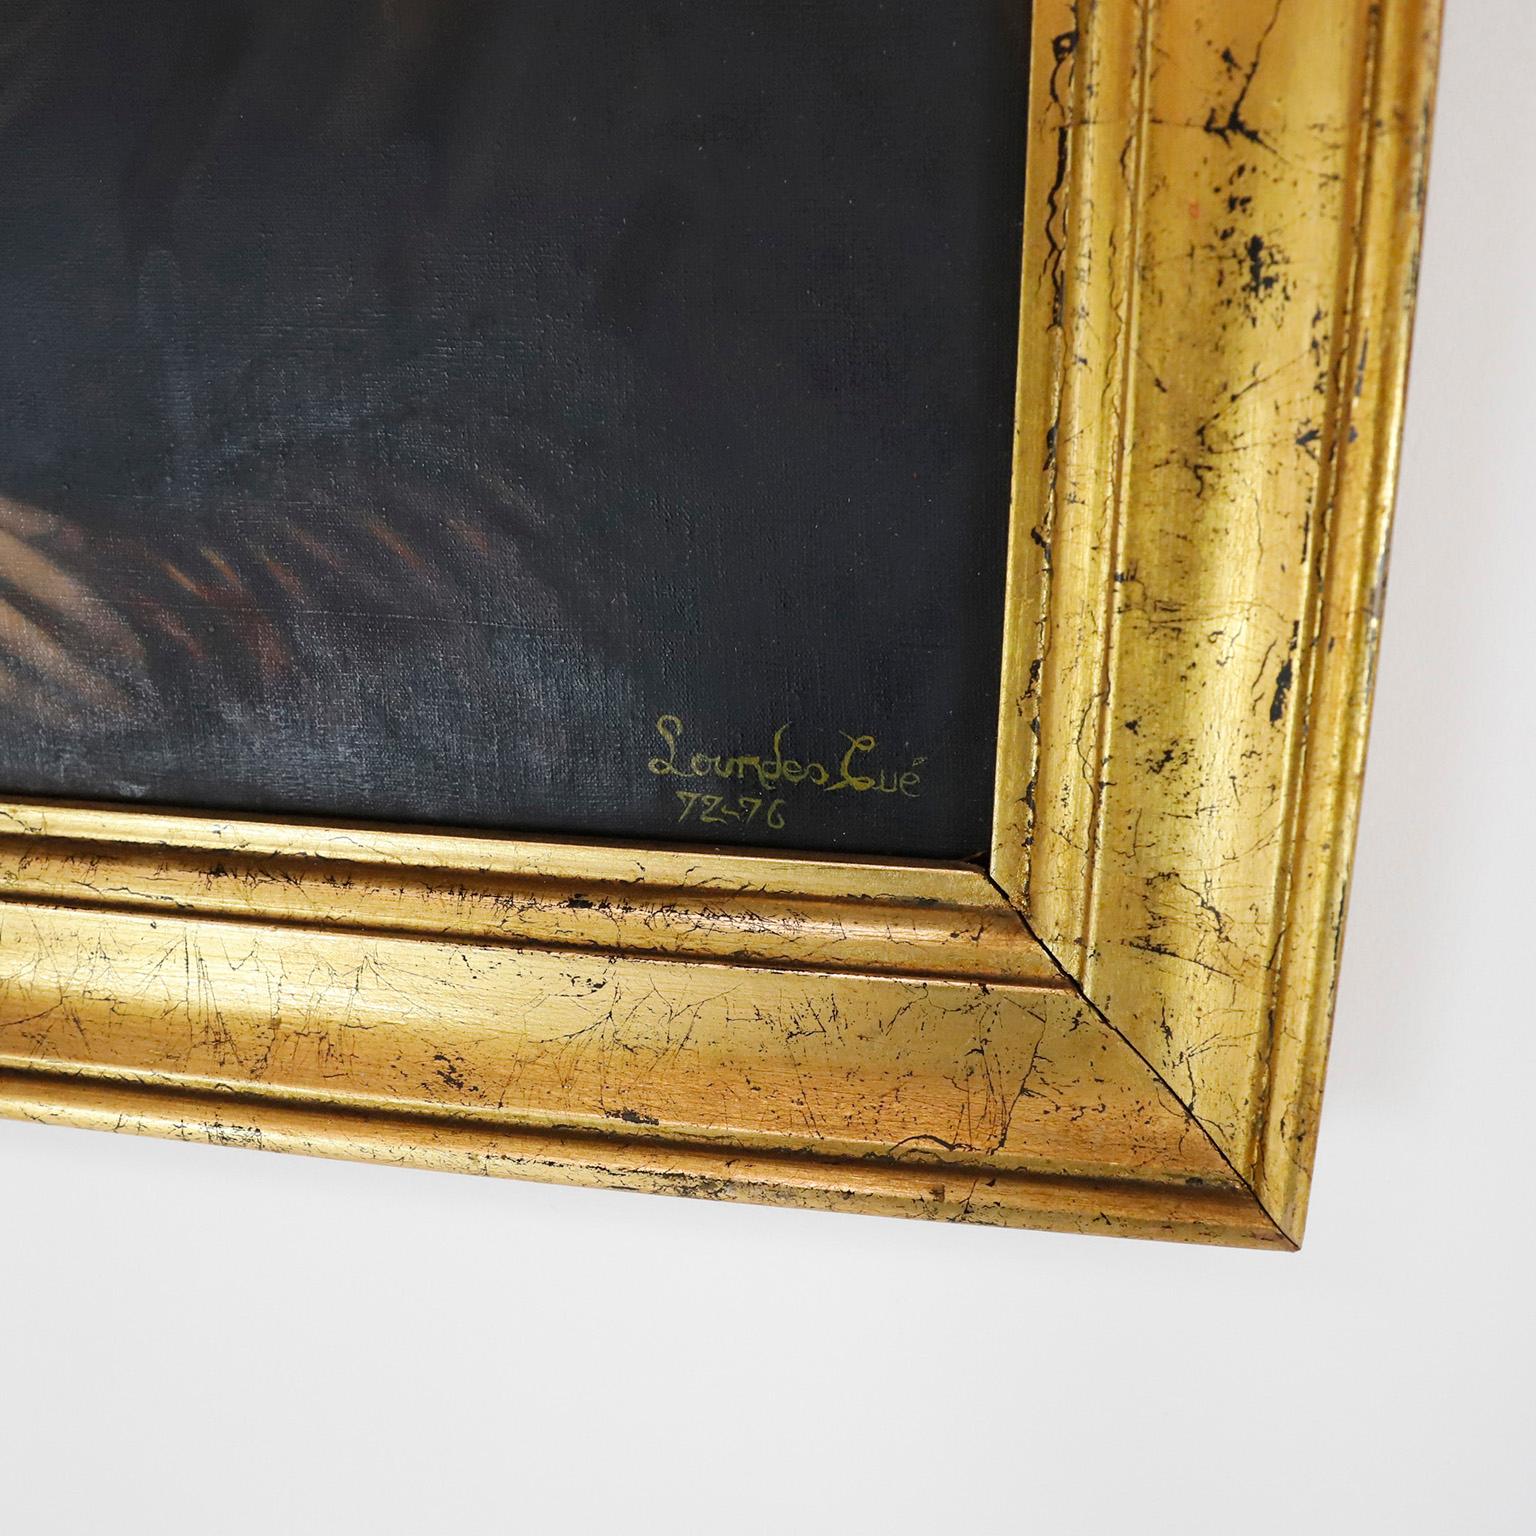 Gemalt zwischen 1972 und 1976. Wir bieten diese antike Monalisa handgemalte Replik signiert von Lourdes Cúe.